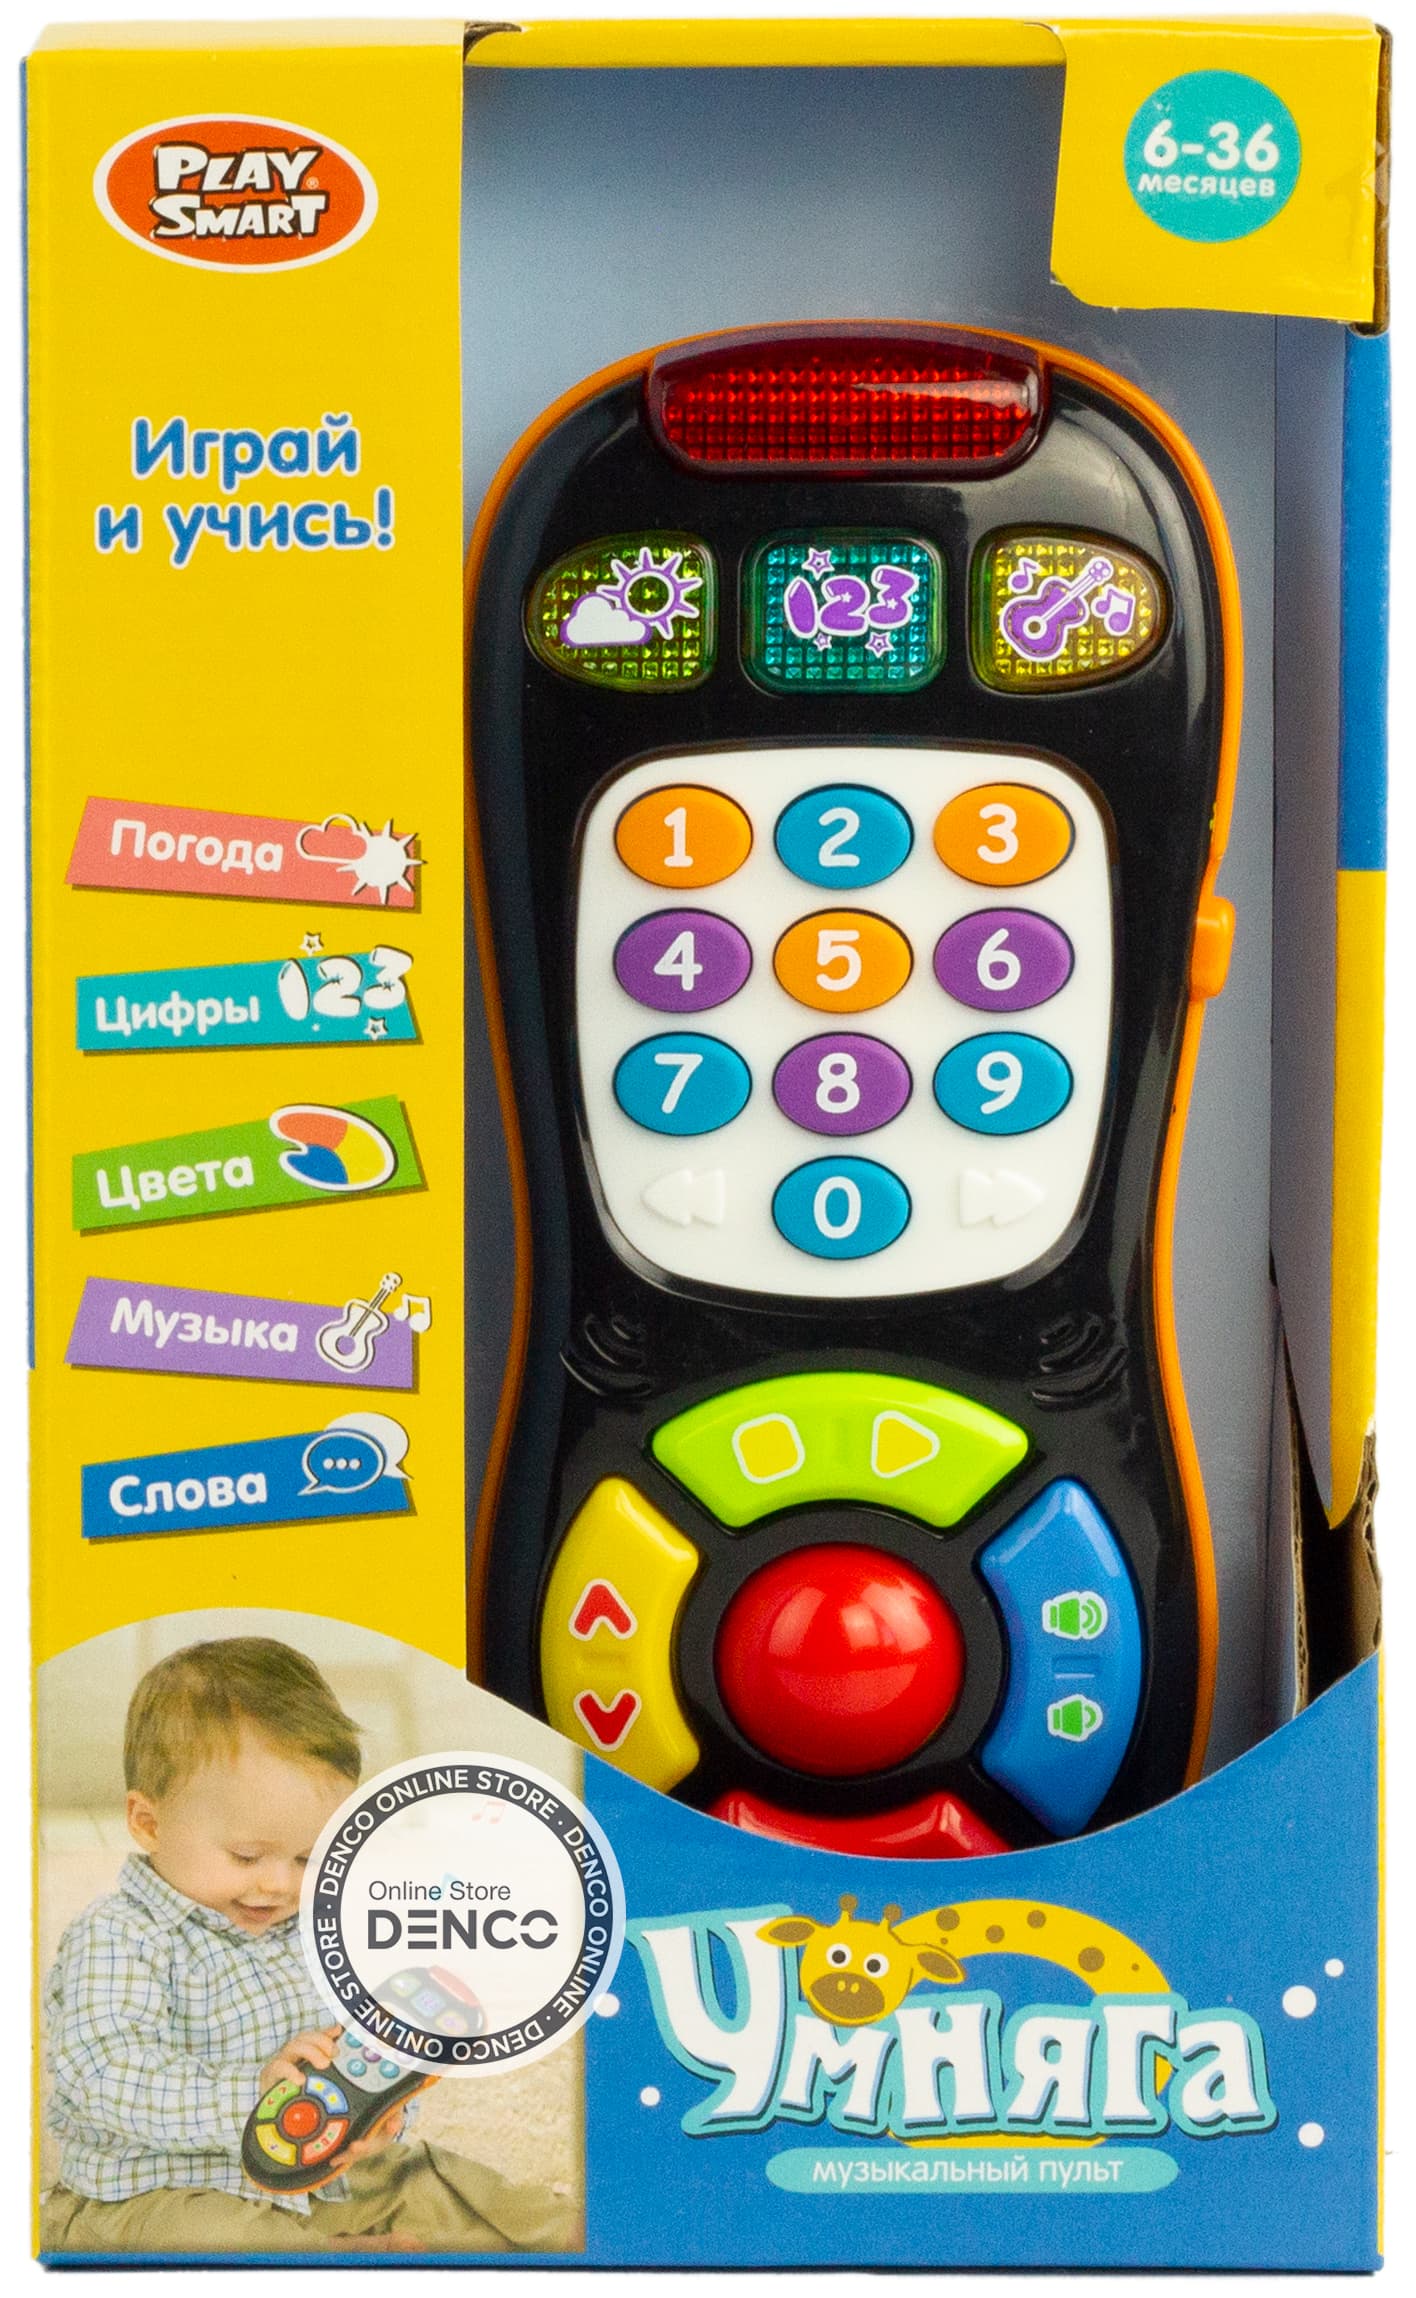 Игрушка музыкальная обучающая Play Smart «Пульт» 7390 (Умняга) учим буквы, световые и звуковые эффекты / Микс